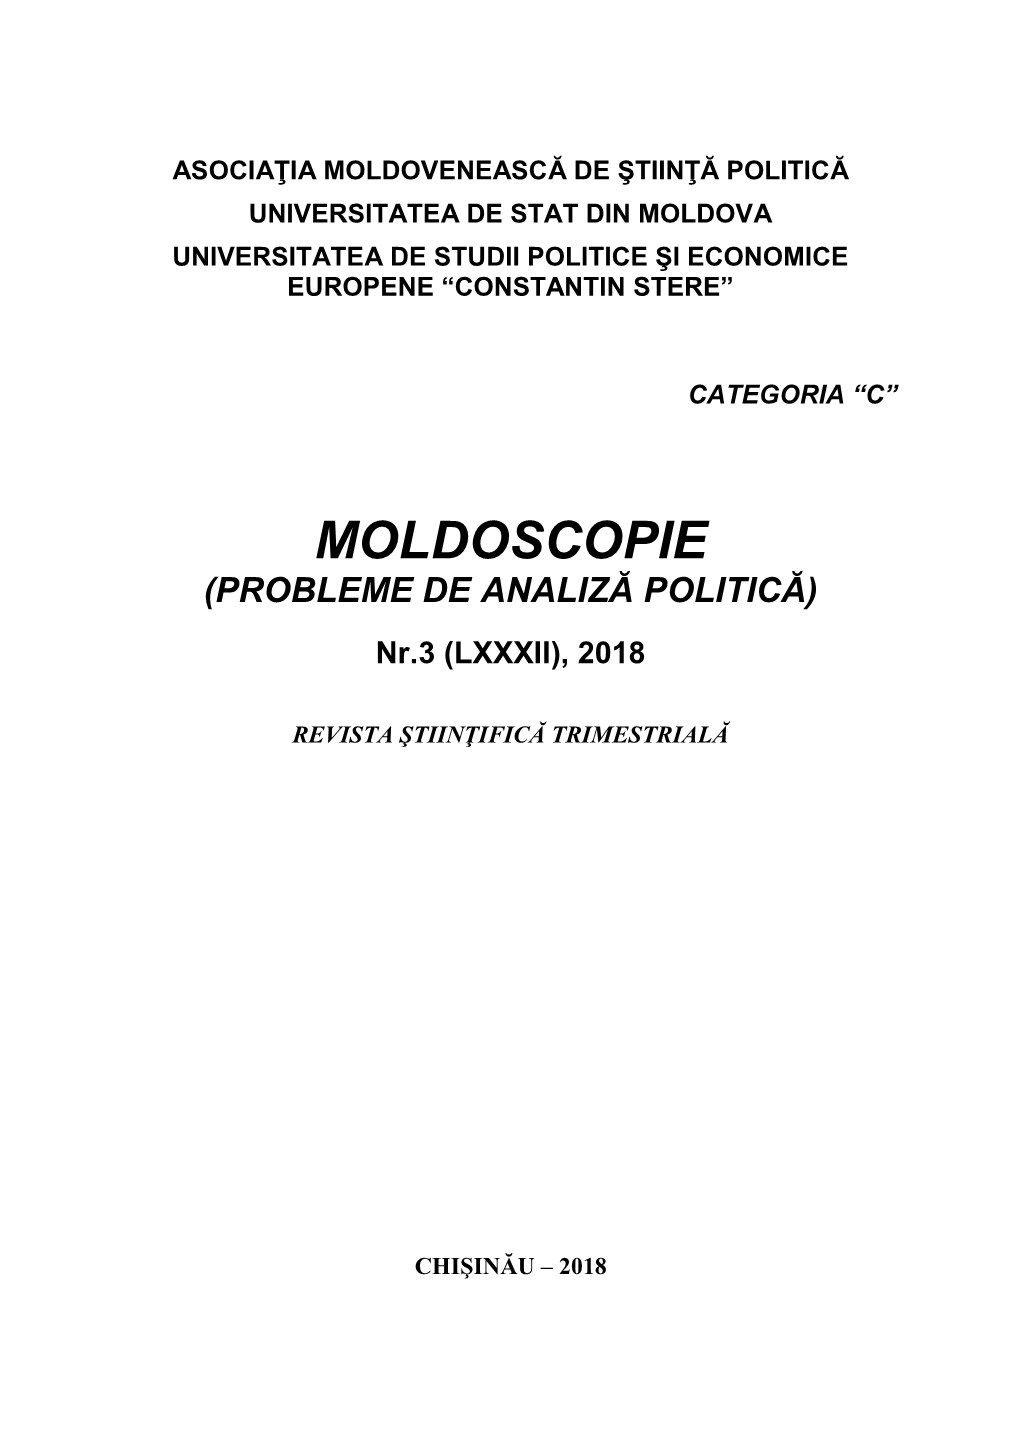 Moldoscopie (Probleme De Analiză Politică)